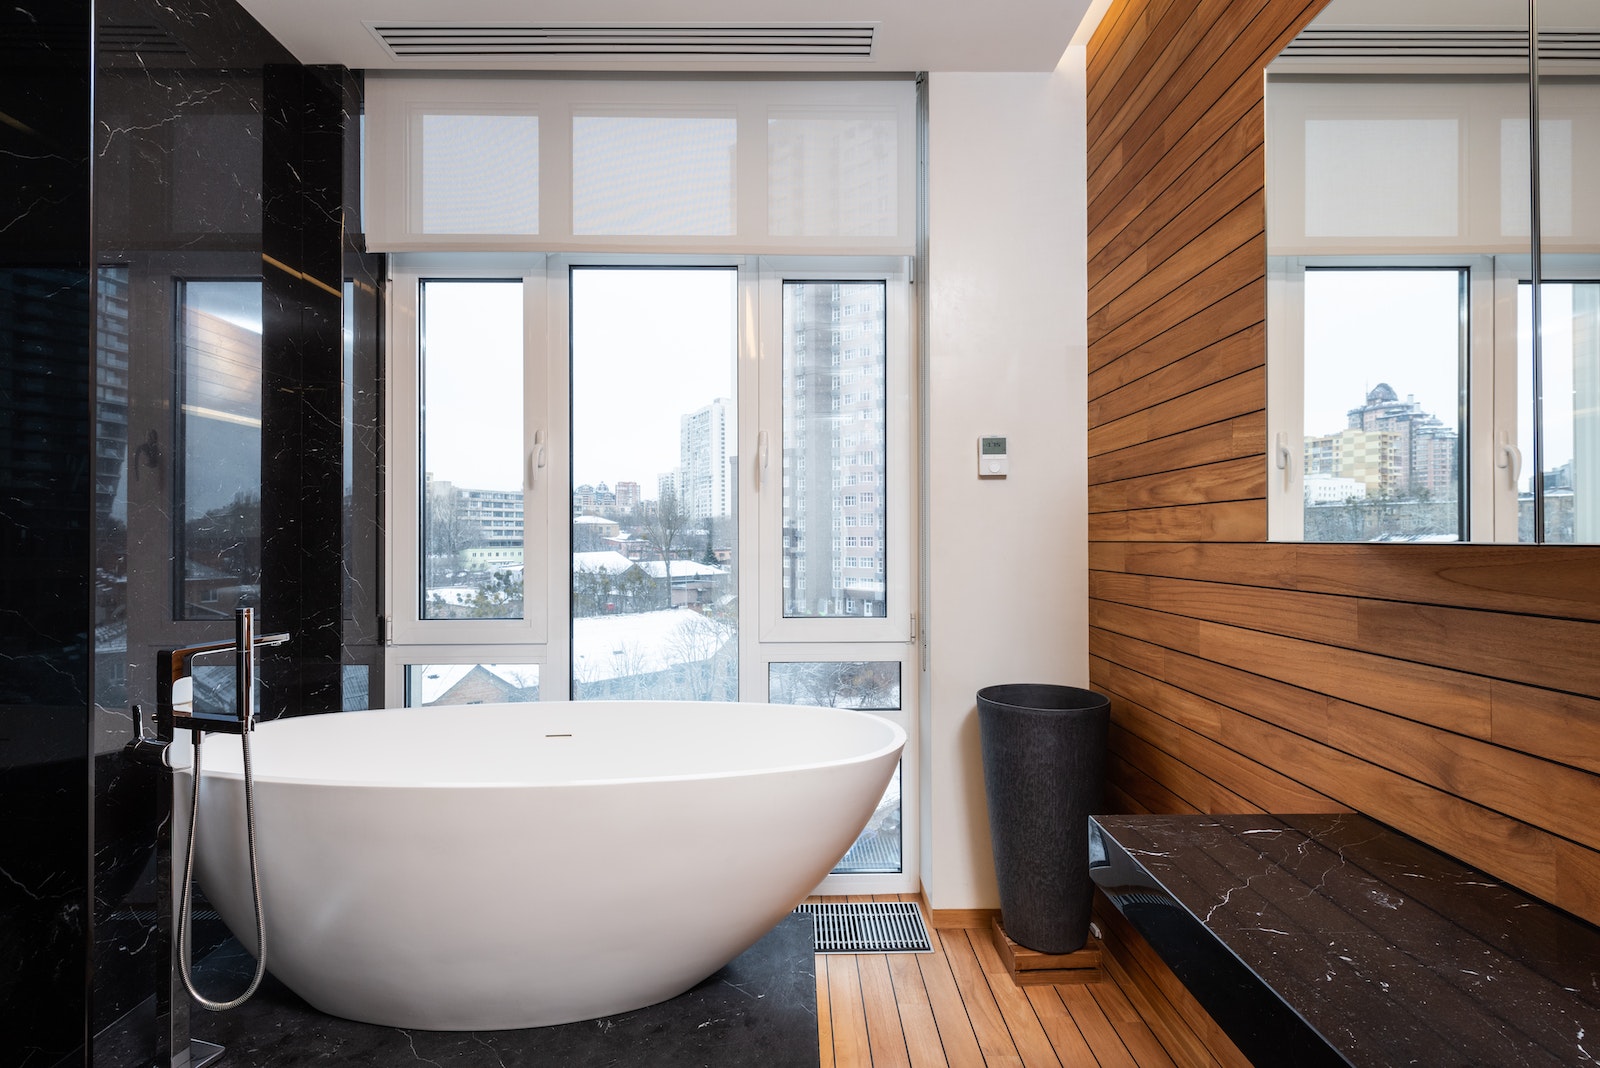 Interior de baño moderno con ventana panorámica